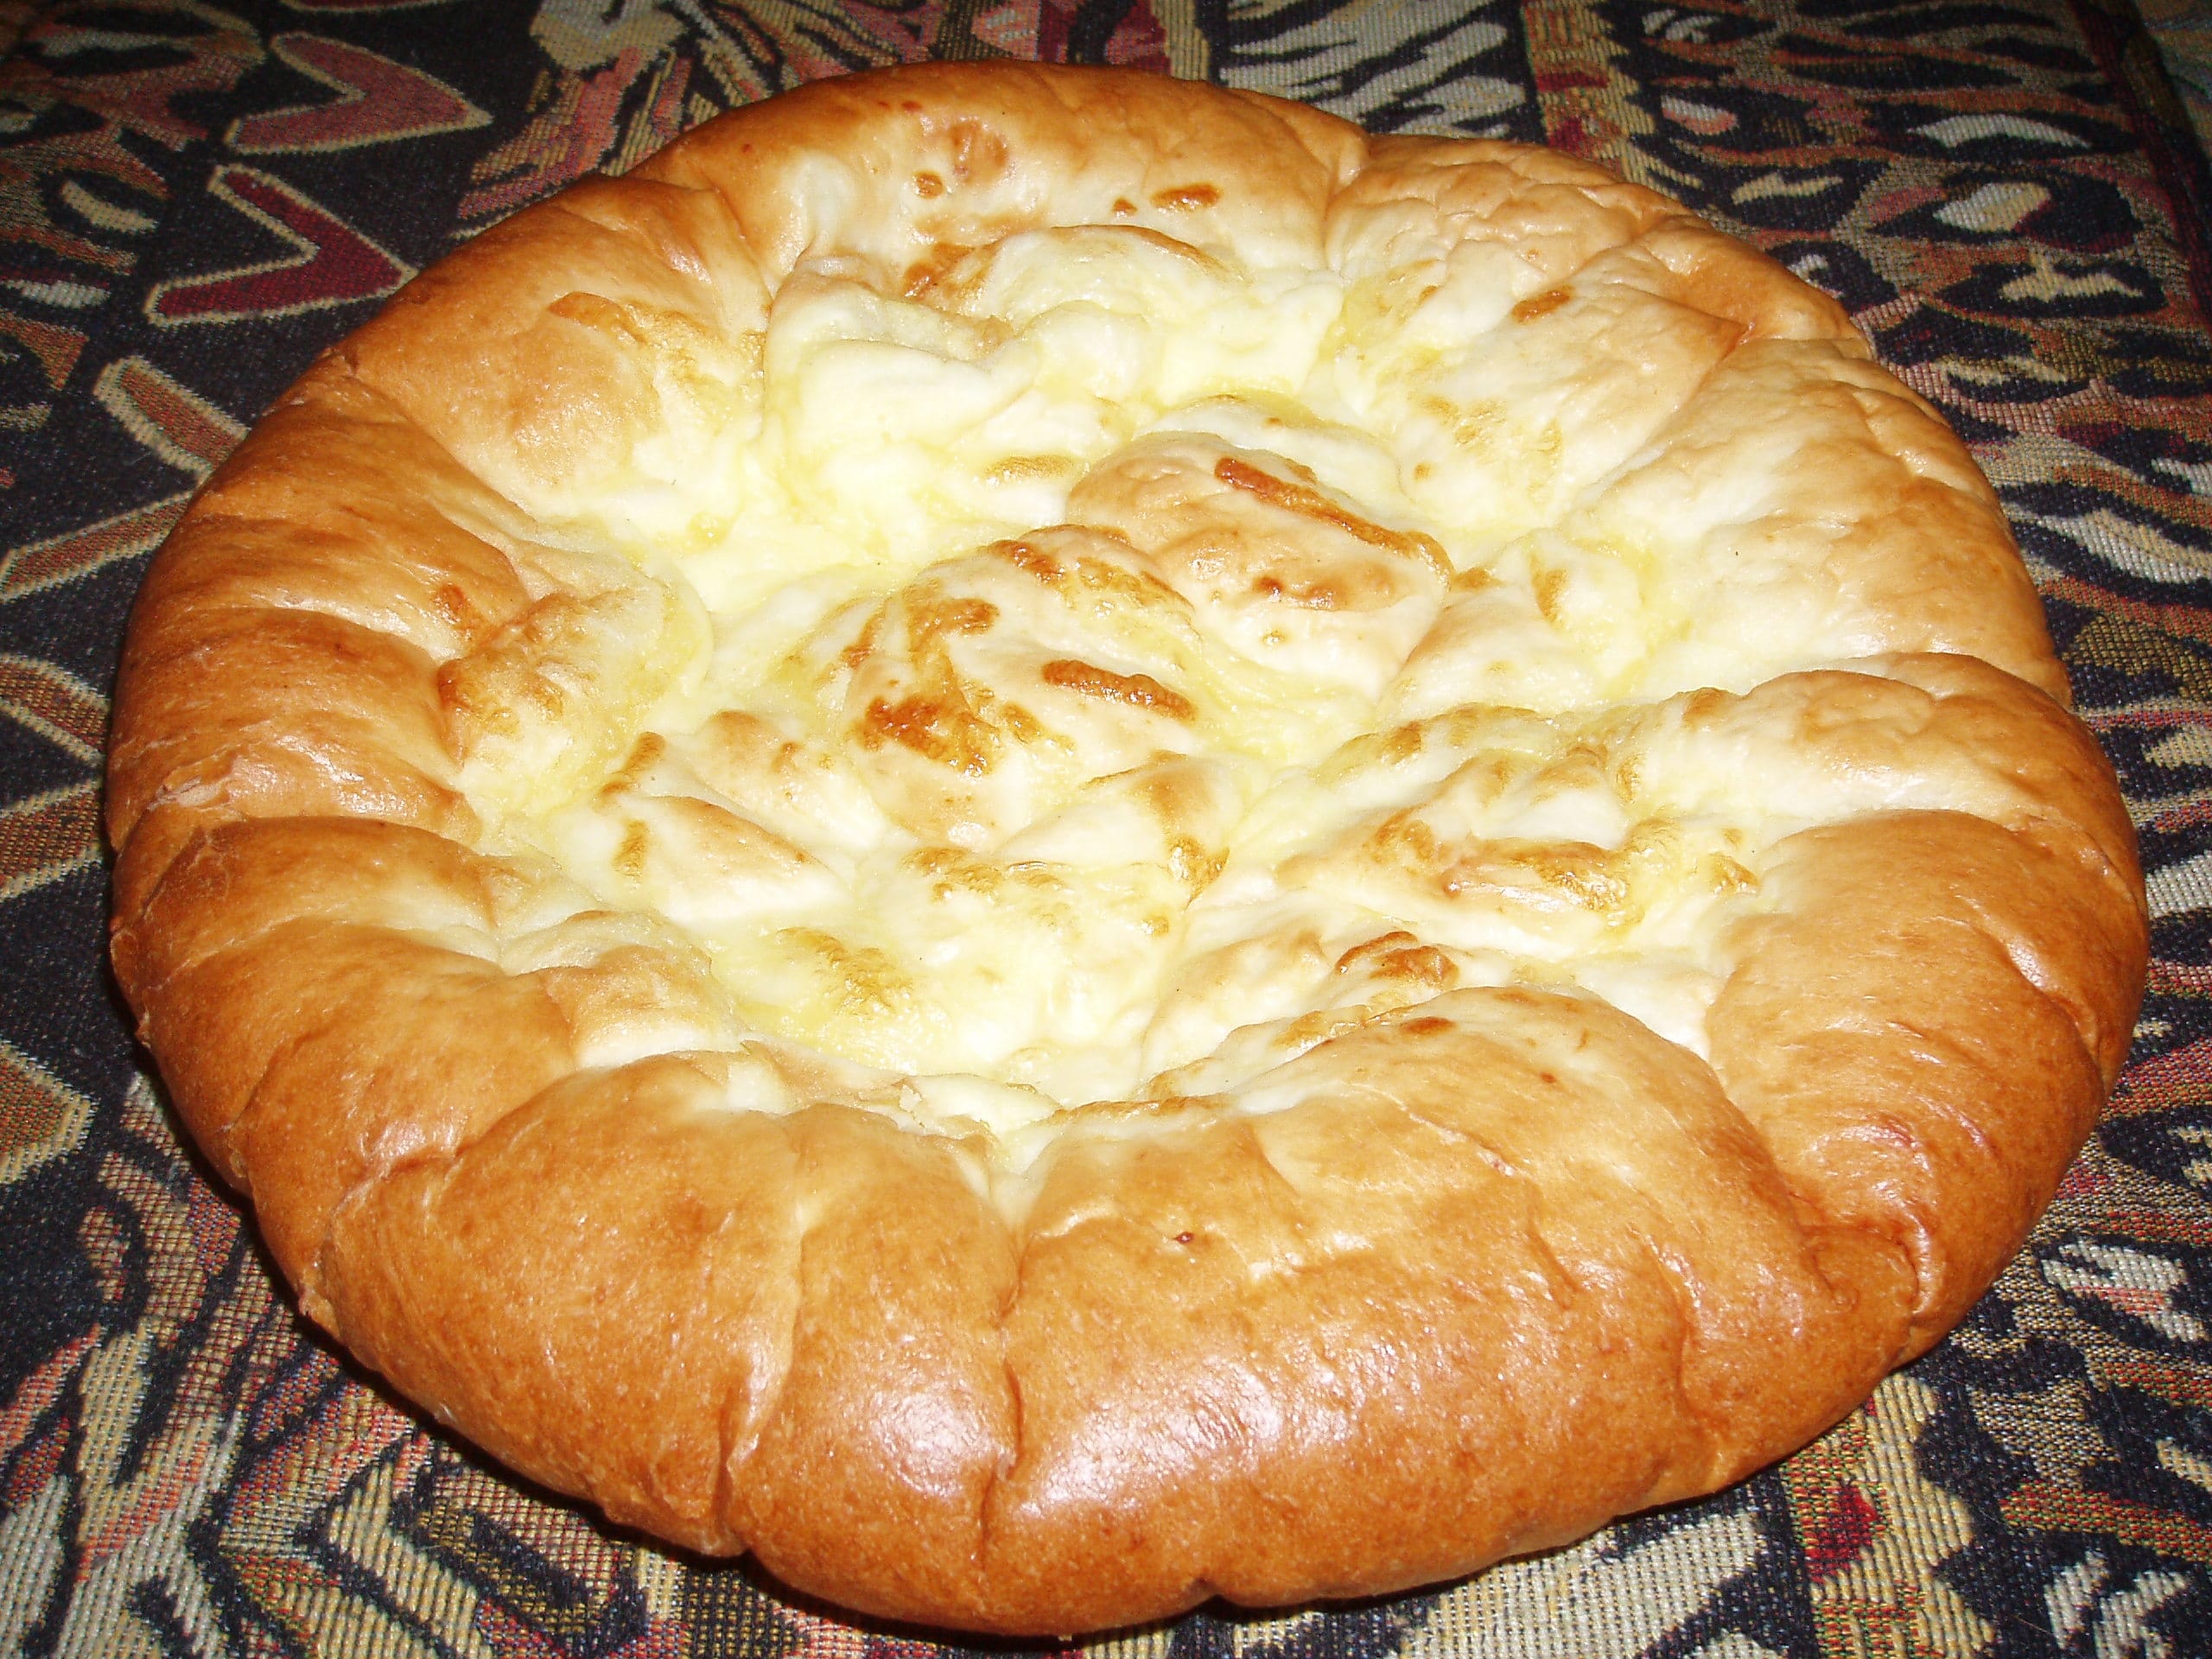 The national dish of Georgia - Khachapuri